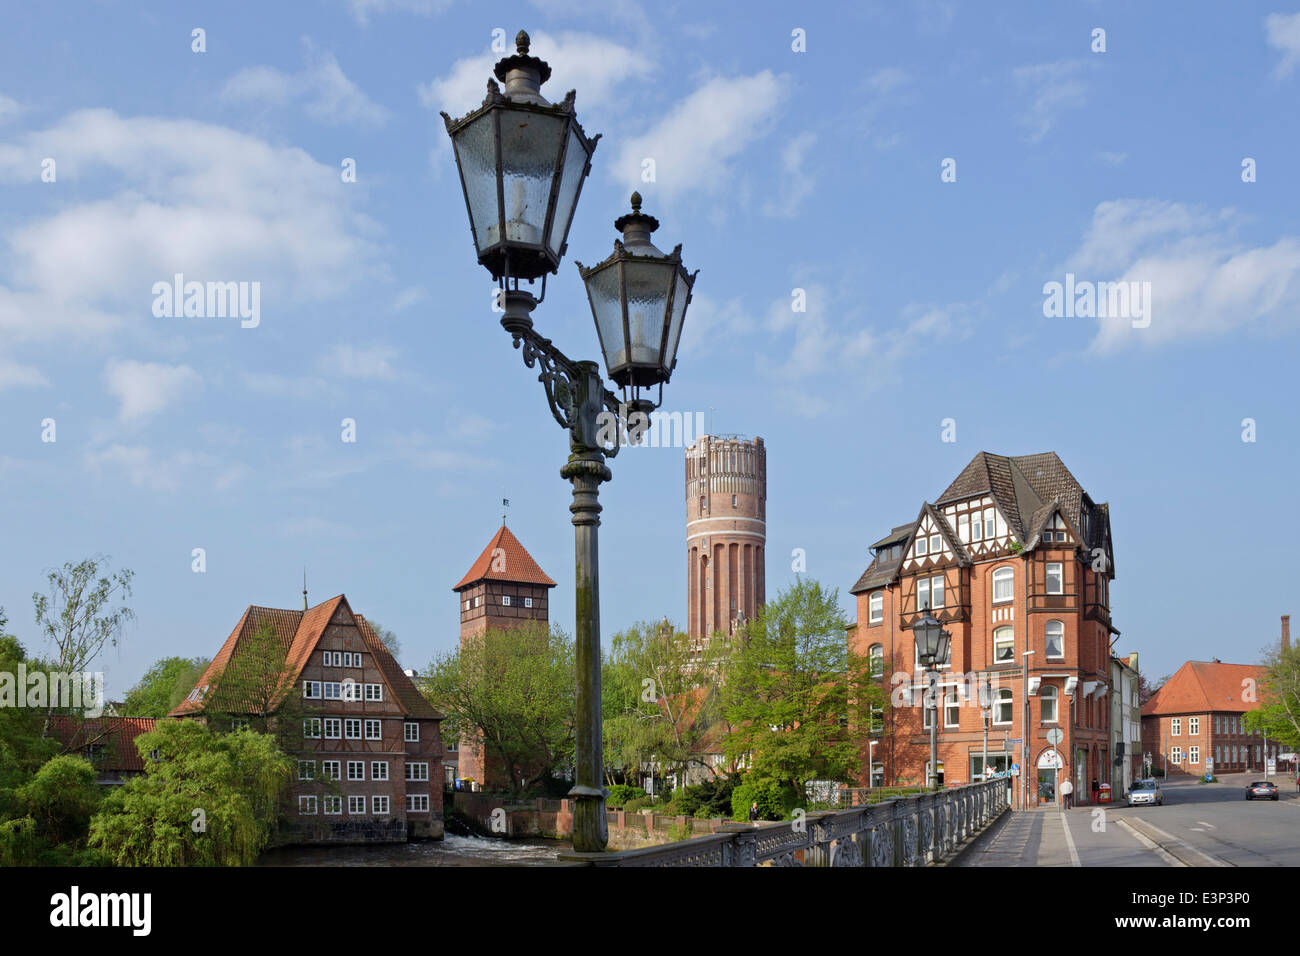 Ratsmuehle, Water Tower, Lueneburg, Lower-Saxony, Germany Stock Photo